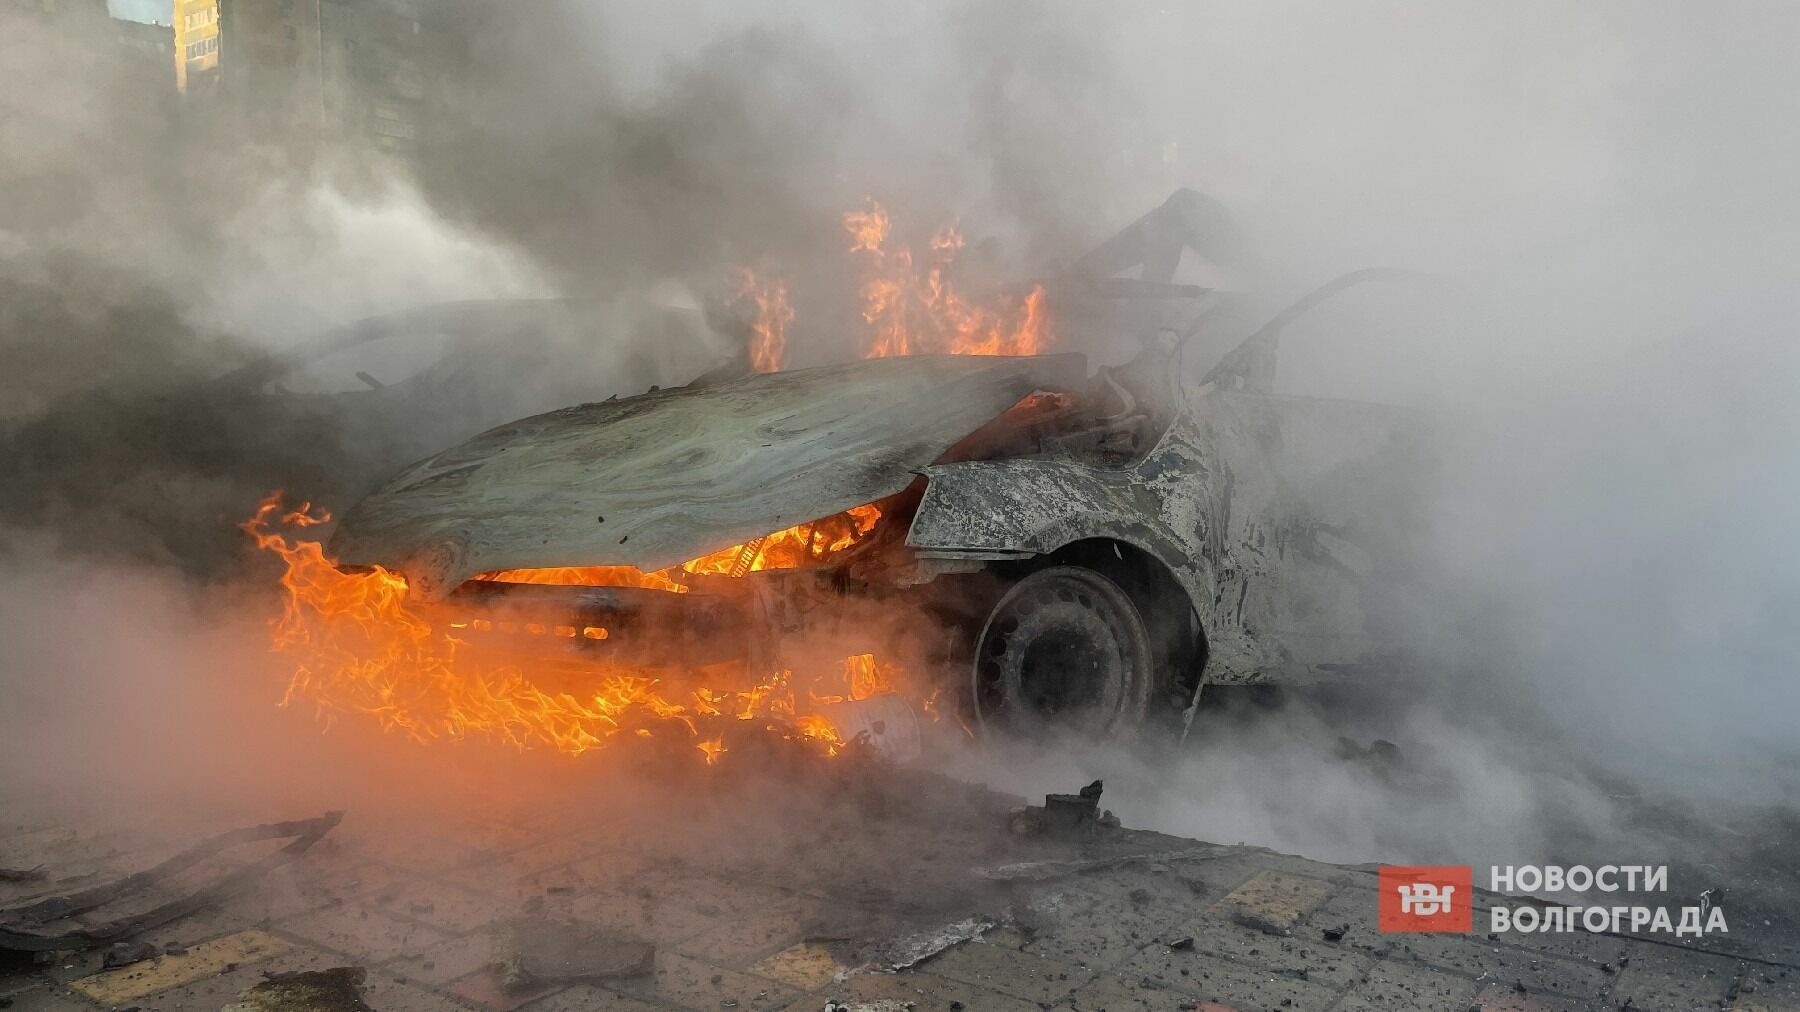 Пять машин сгорели во дворе жилого дома в Волгограде